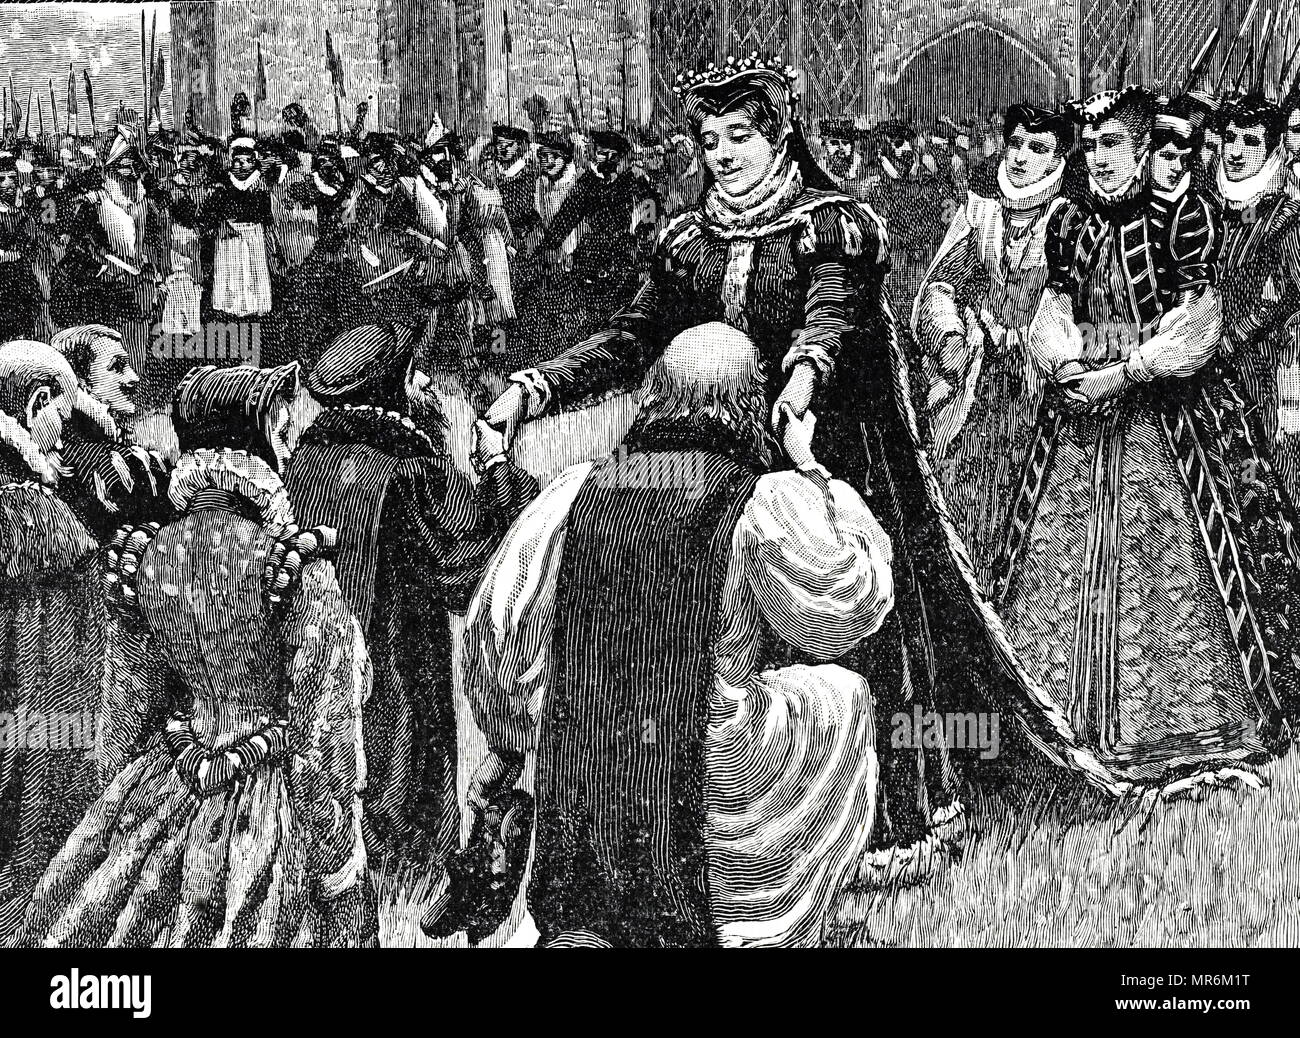 Gravur, Queen Mary I (1516-1558) bei ihrer Ankunft in London im Jahre 1553 ihren Thron zu behaupten, auf Turm Grün von Staaten gefangenen begrüßt inhaftiert im Turm unter König Heinrich VIII. und König Edward VI. Jedes umarmte sie und gab ihnen ihre Freiheit. Vom 19. Jahrhundert Stockfoto